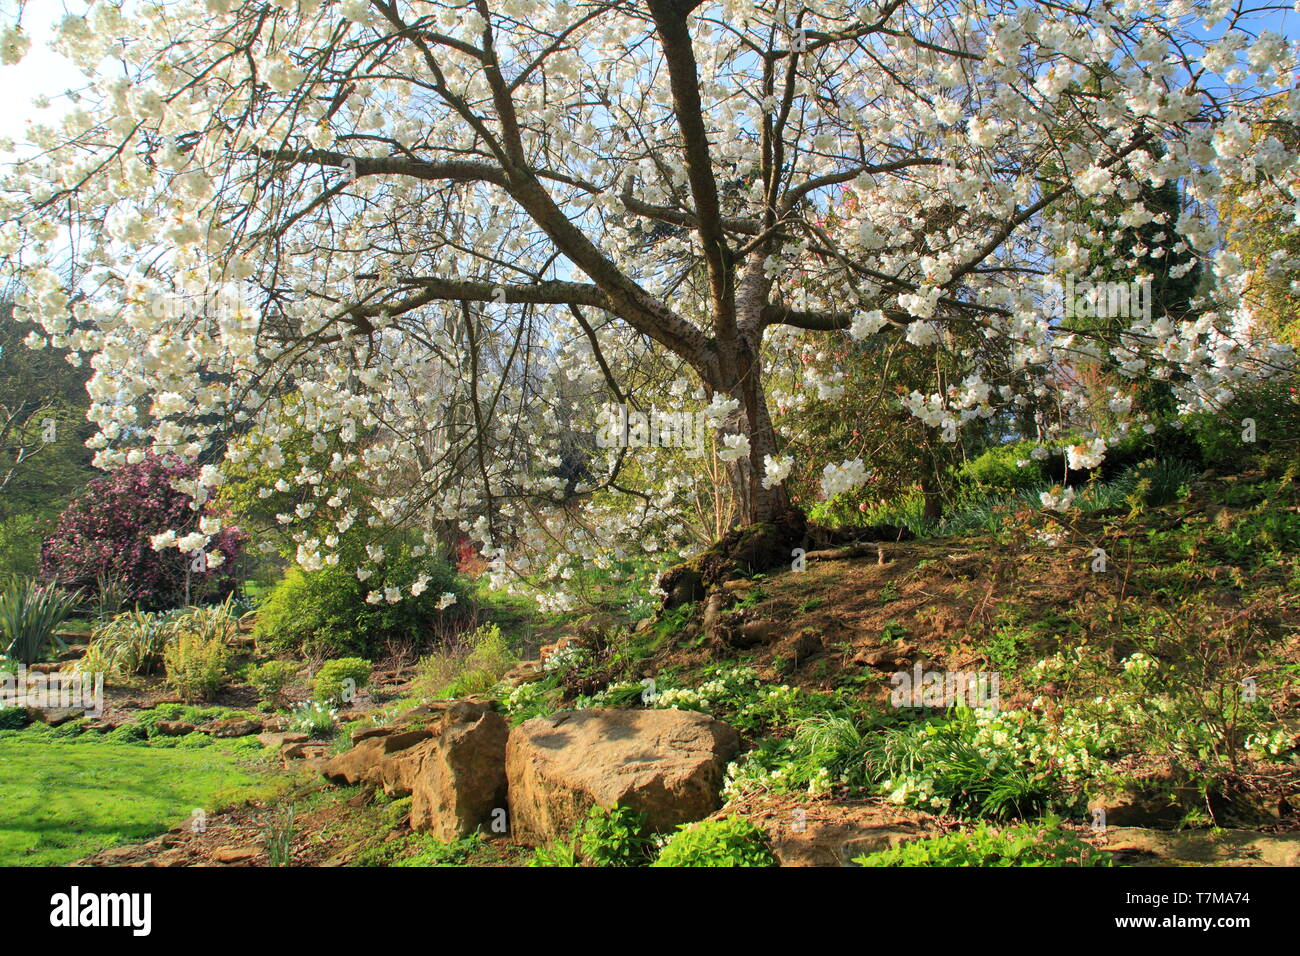 Belvor jardins du château, Royaume-Uni.. Fleurs d'un cerisier Mont Fuji embellir la Duchesse' Jardin dans ce Leicesterhsire stately home près de Grantham Banque D'Images